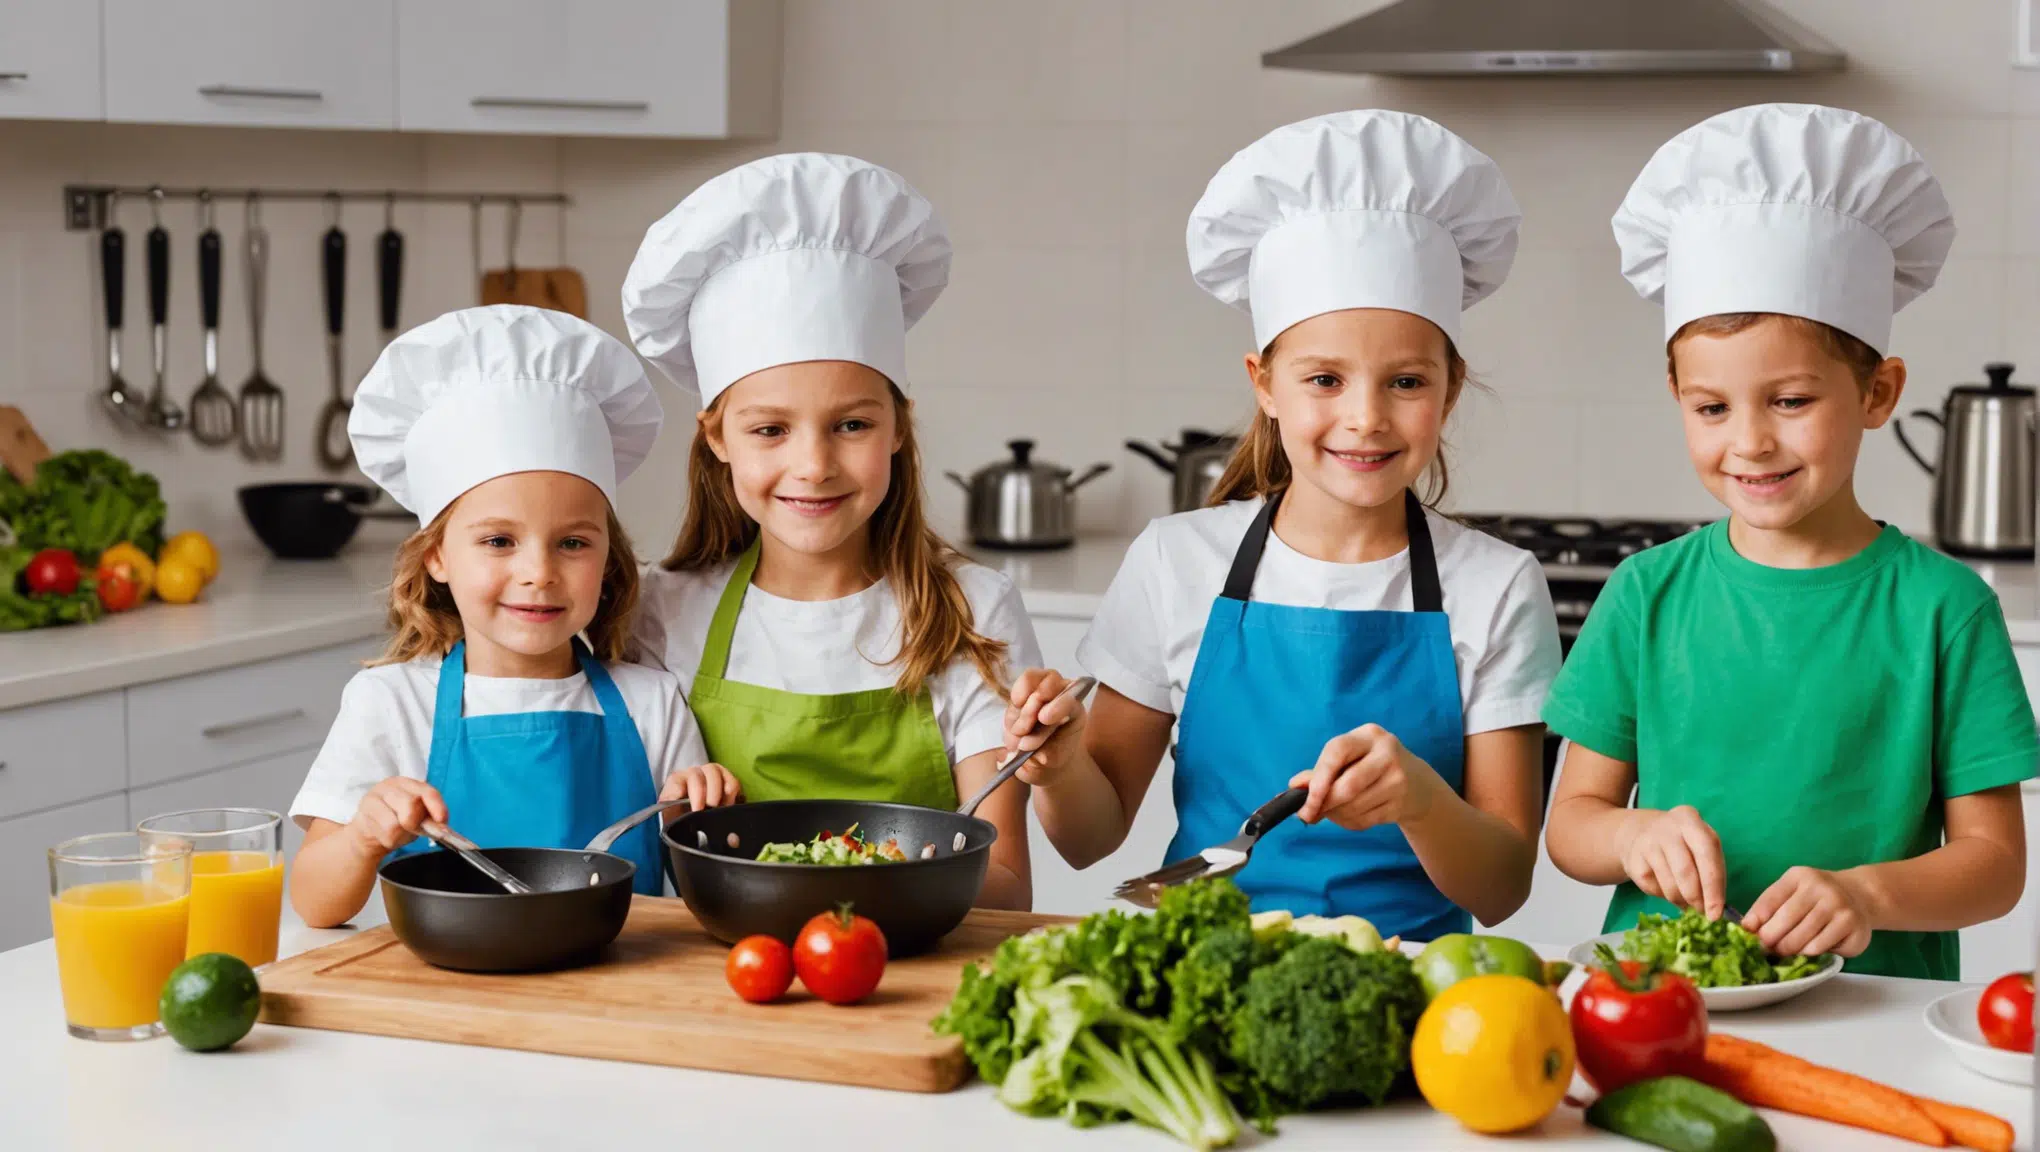 découvrez des idées et des astuces pour rendre la cuisine amusante pour les enfants et les familles. retrouvez des recettes ludiques et des conseils pour des moments conviviaux en famille.